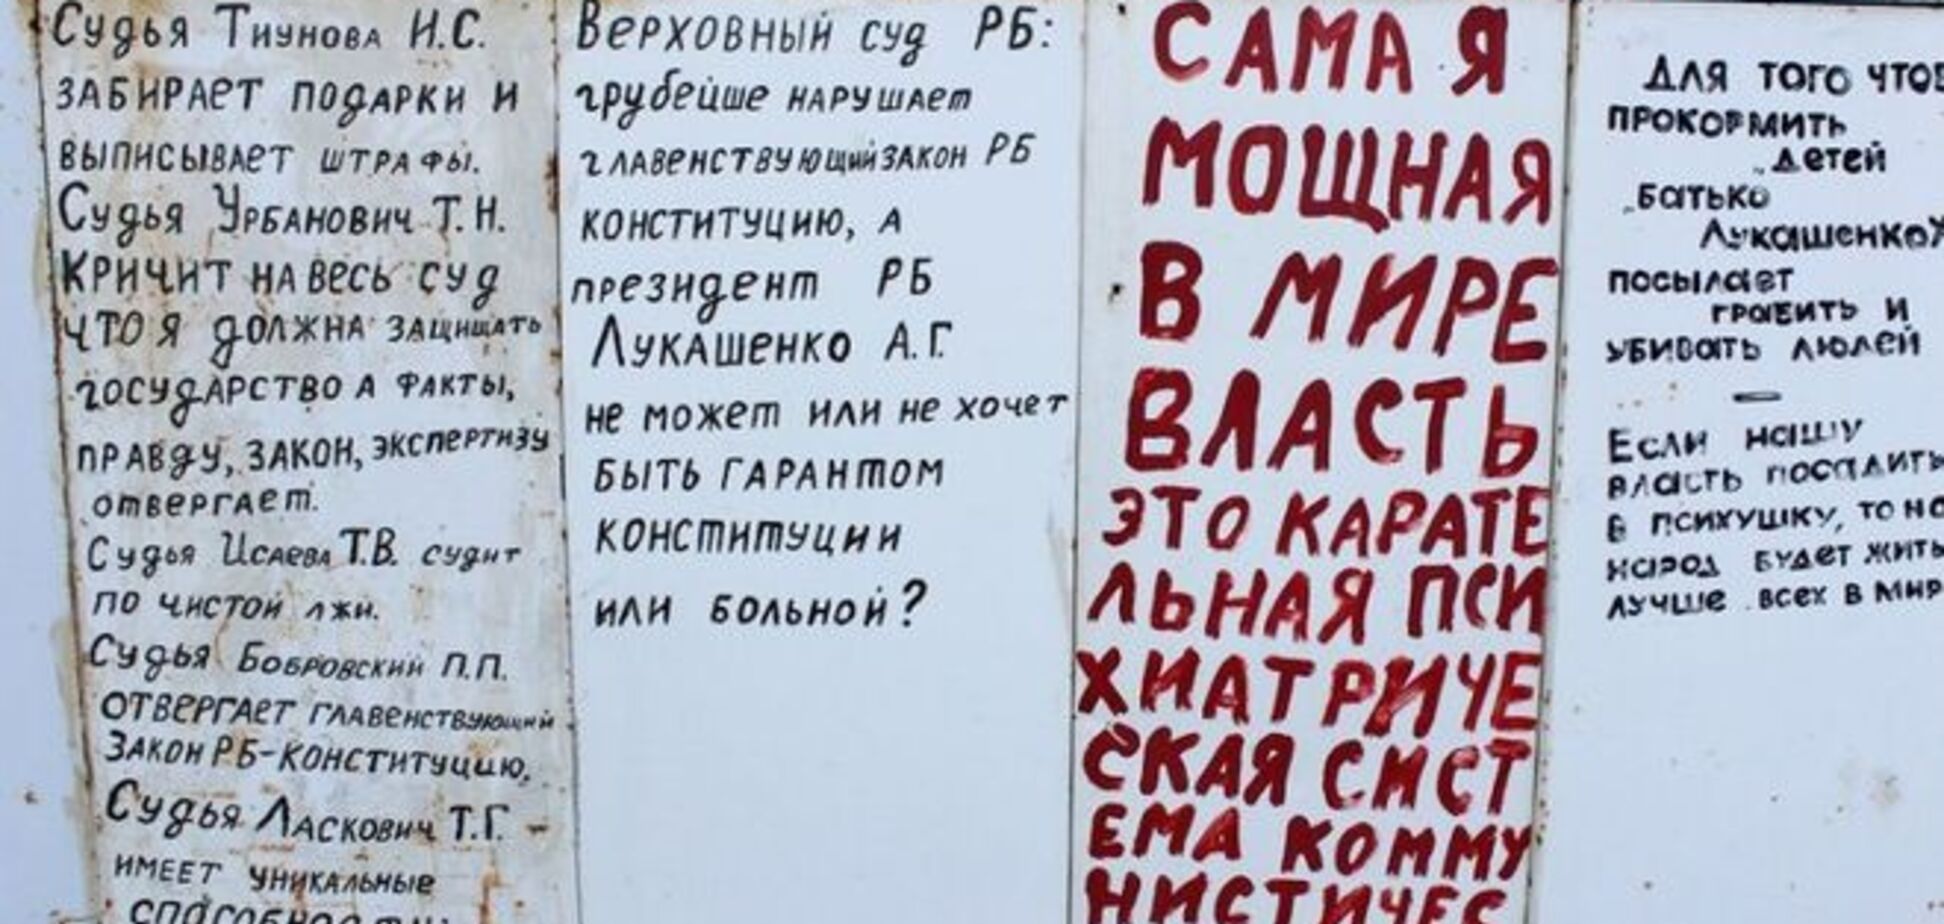 Белоруса, который 10 лет критиковал власть на своем заборе, будут судить: фото уникального 'блога'